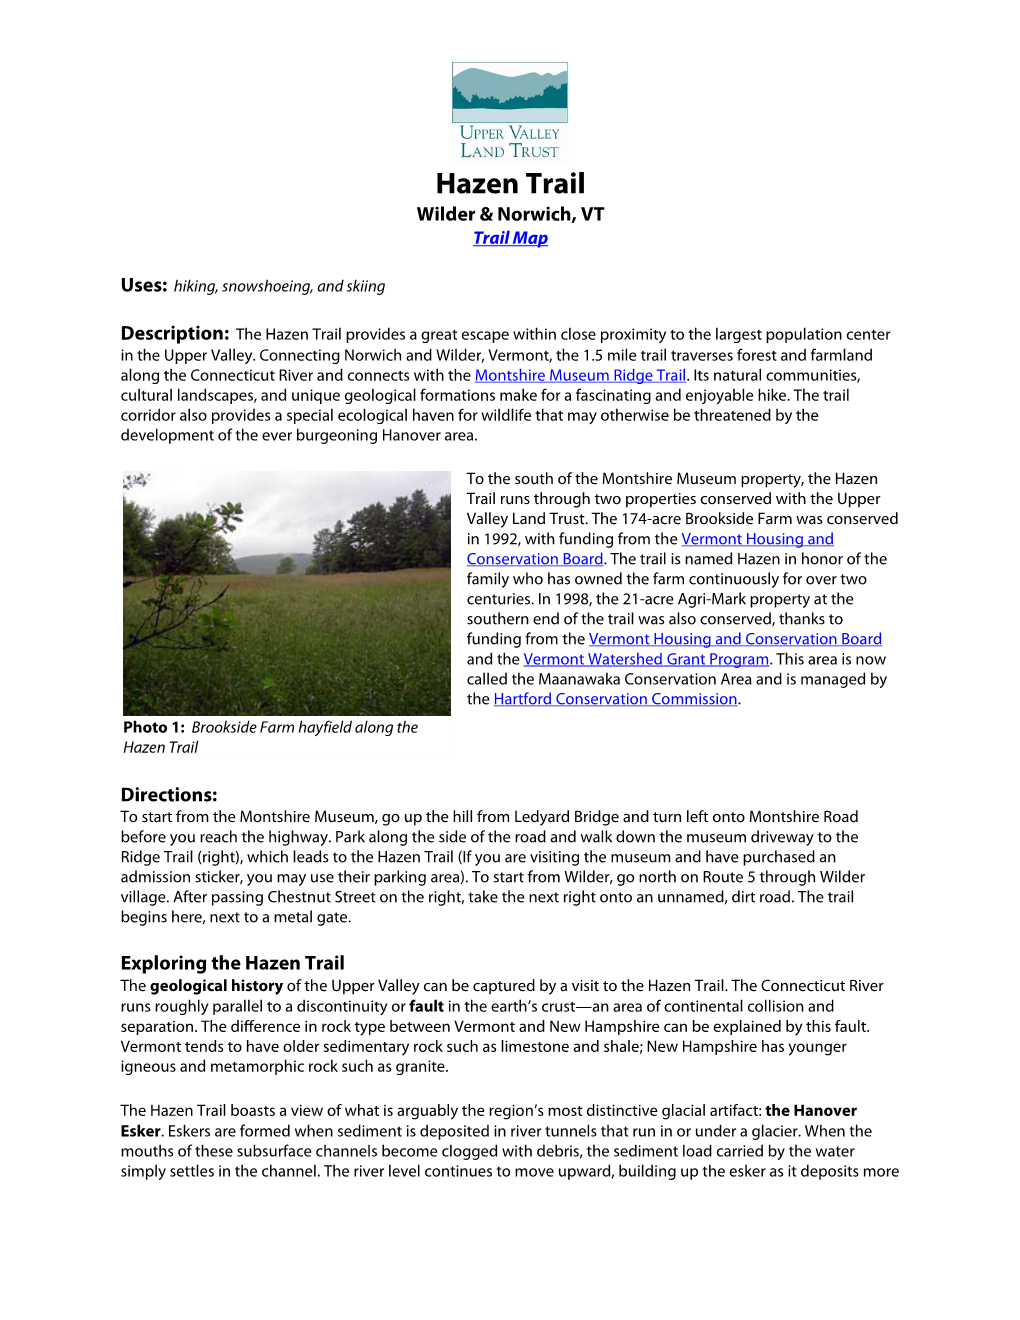 Hazen Trail Wilder & Norwich, VT Trail Map